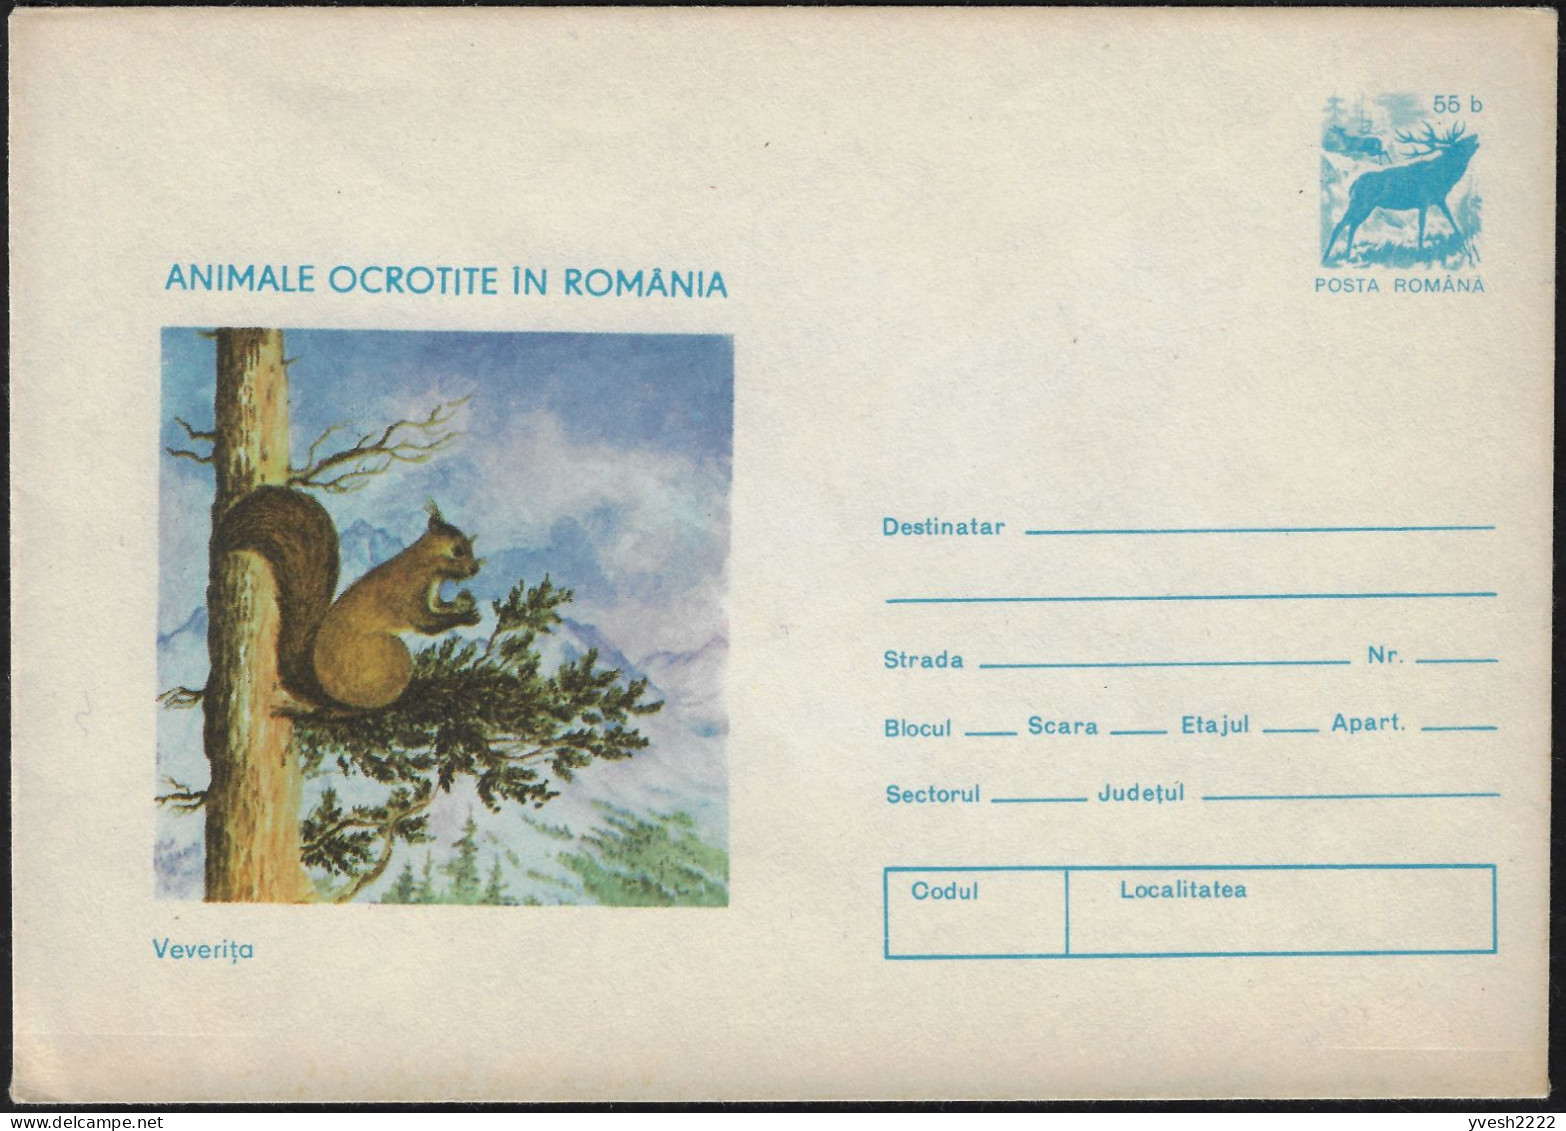 Roumanie 1977. Entier Postal, Animaux Protégés En Roumanie. Écureuil, Cerf - Nager